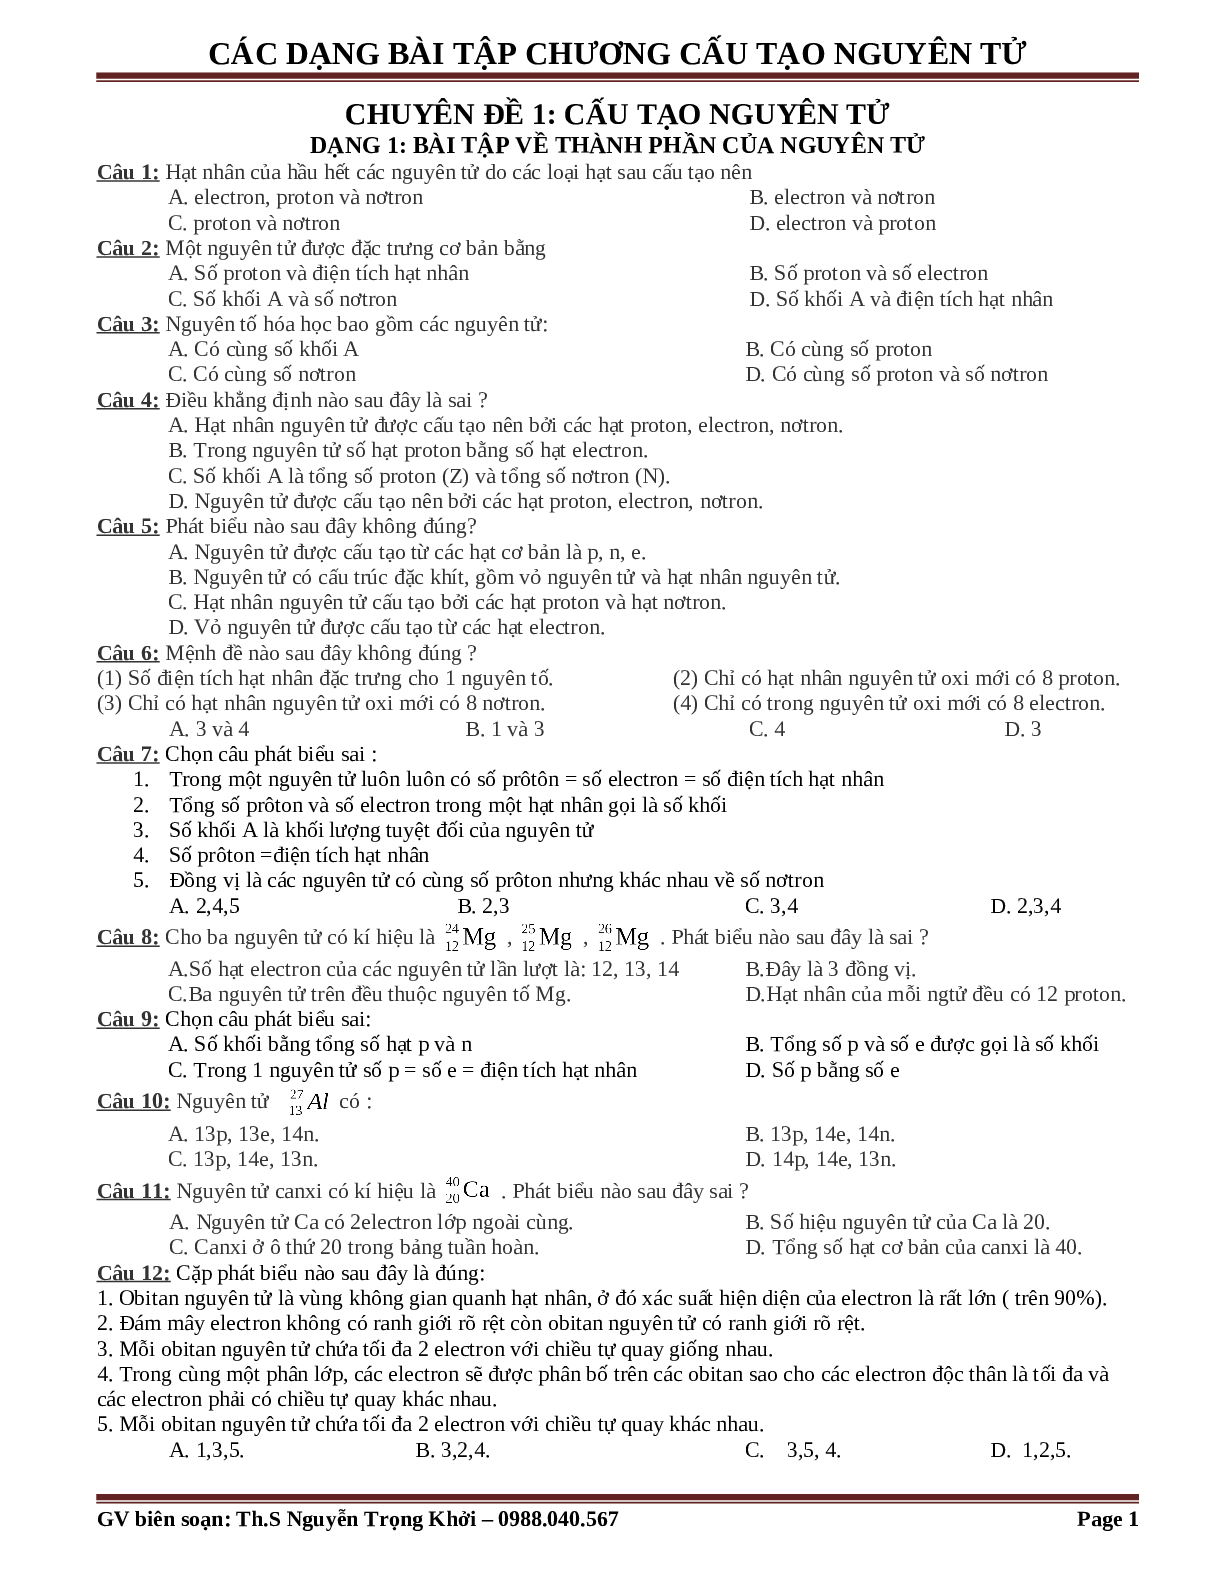 Bài tập về cấu tạo nguyên tử cơ bản, nâng cao (trang 1)